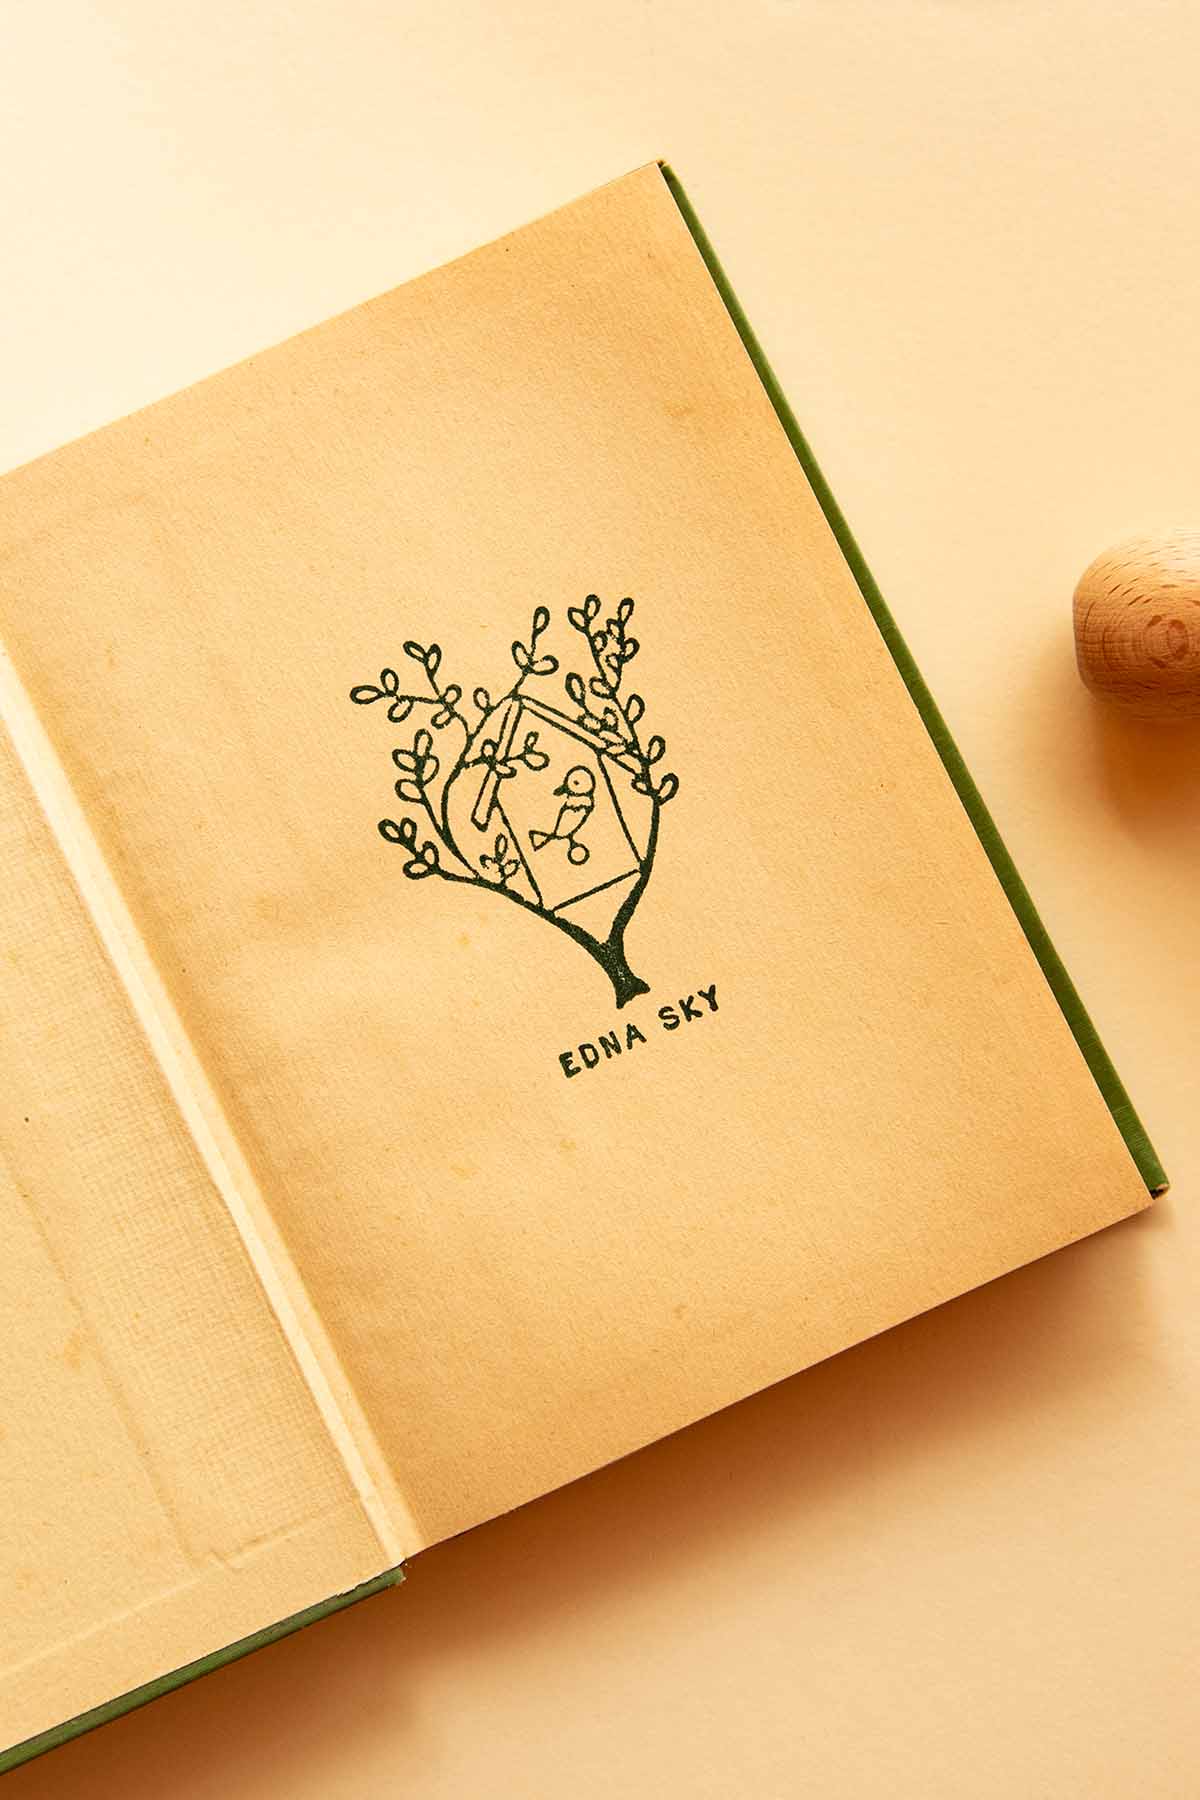 Portadilla de libro estampada con sello exlibris de una casita de pájaro